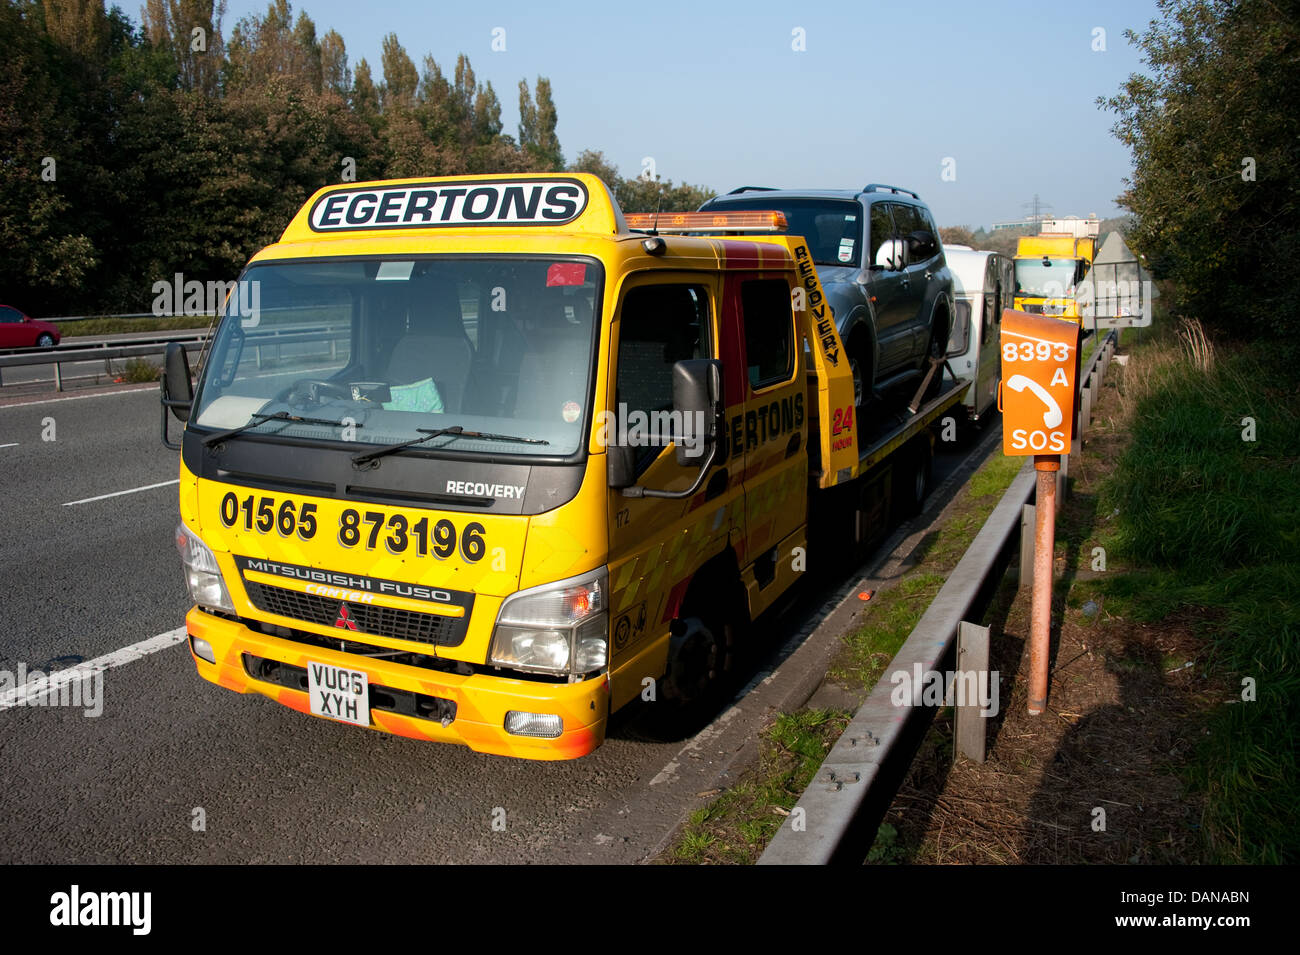 Egertons Motorway breakdown rescue truck UK Stock Photo